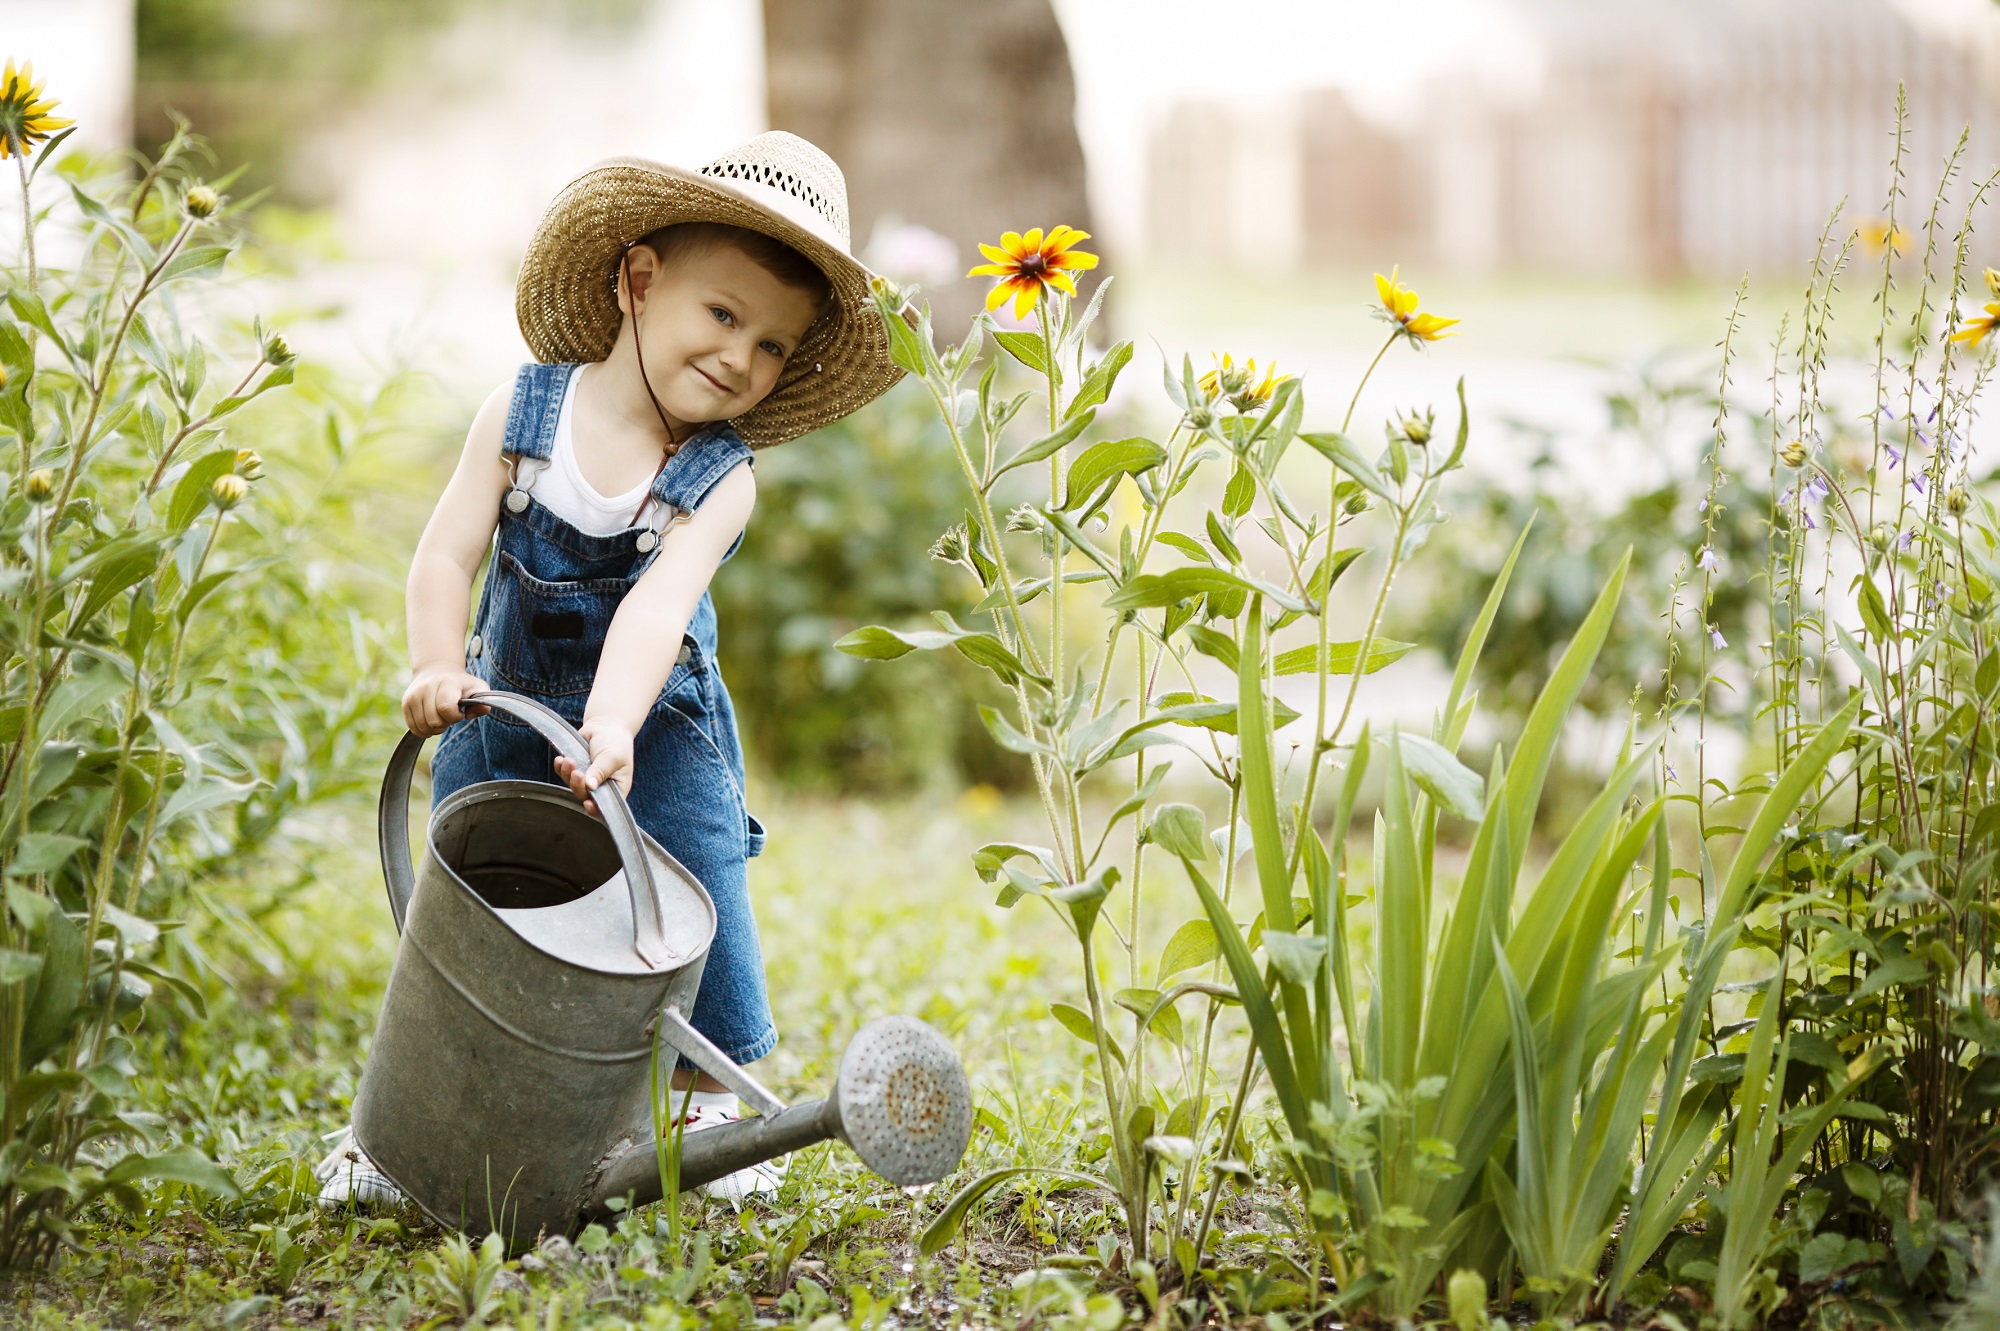 Календарь садовода и огородника июне. Источник фото: Shutterstock